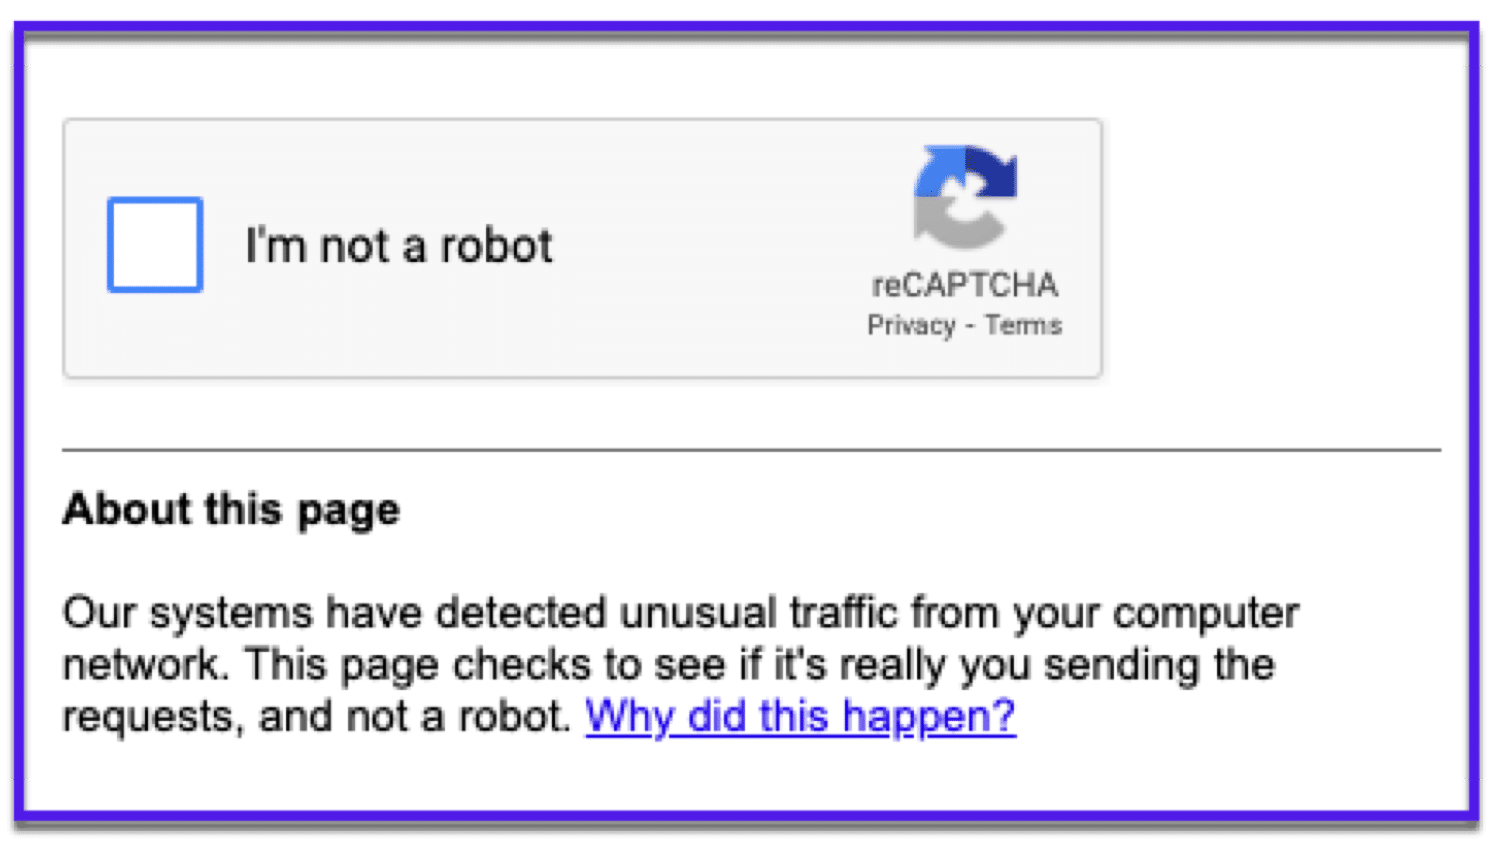 Probablemente verás este Google reCAPTCHA si usas demasiados operadores